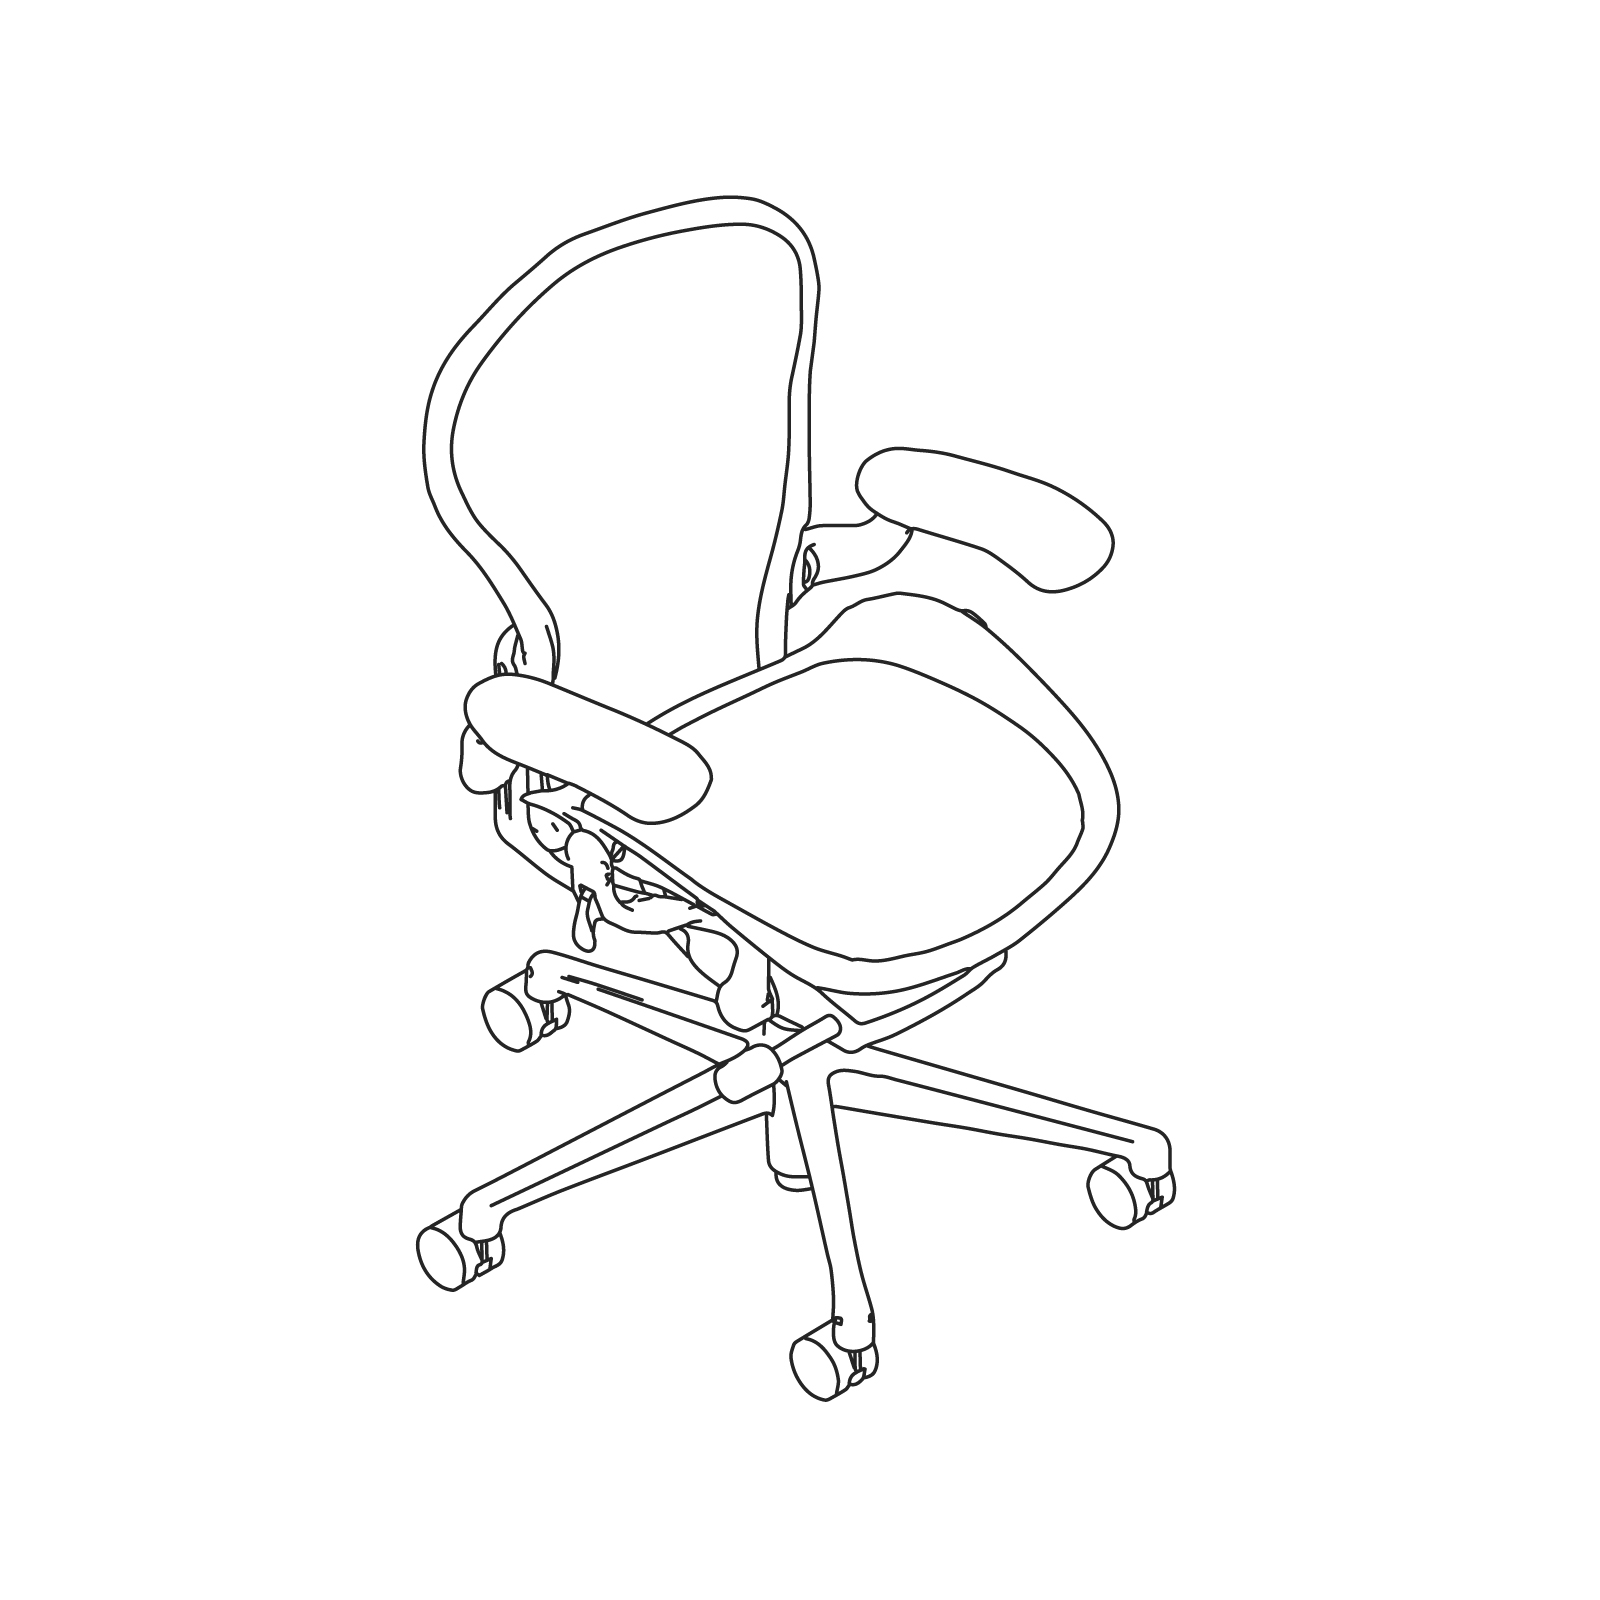 dim_prd_spc_aeron_chair_a_size_01.jpg